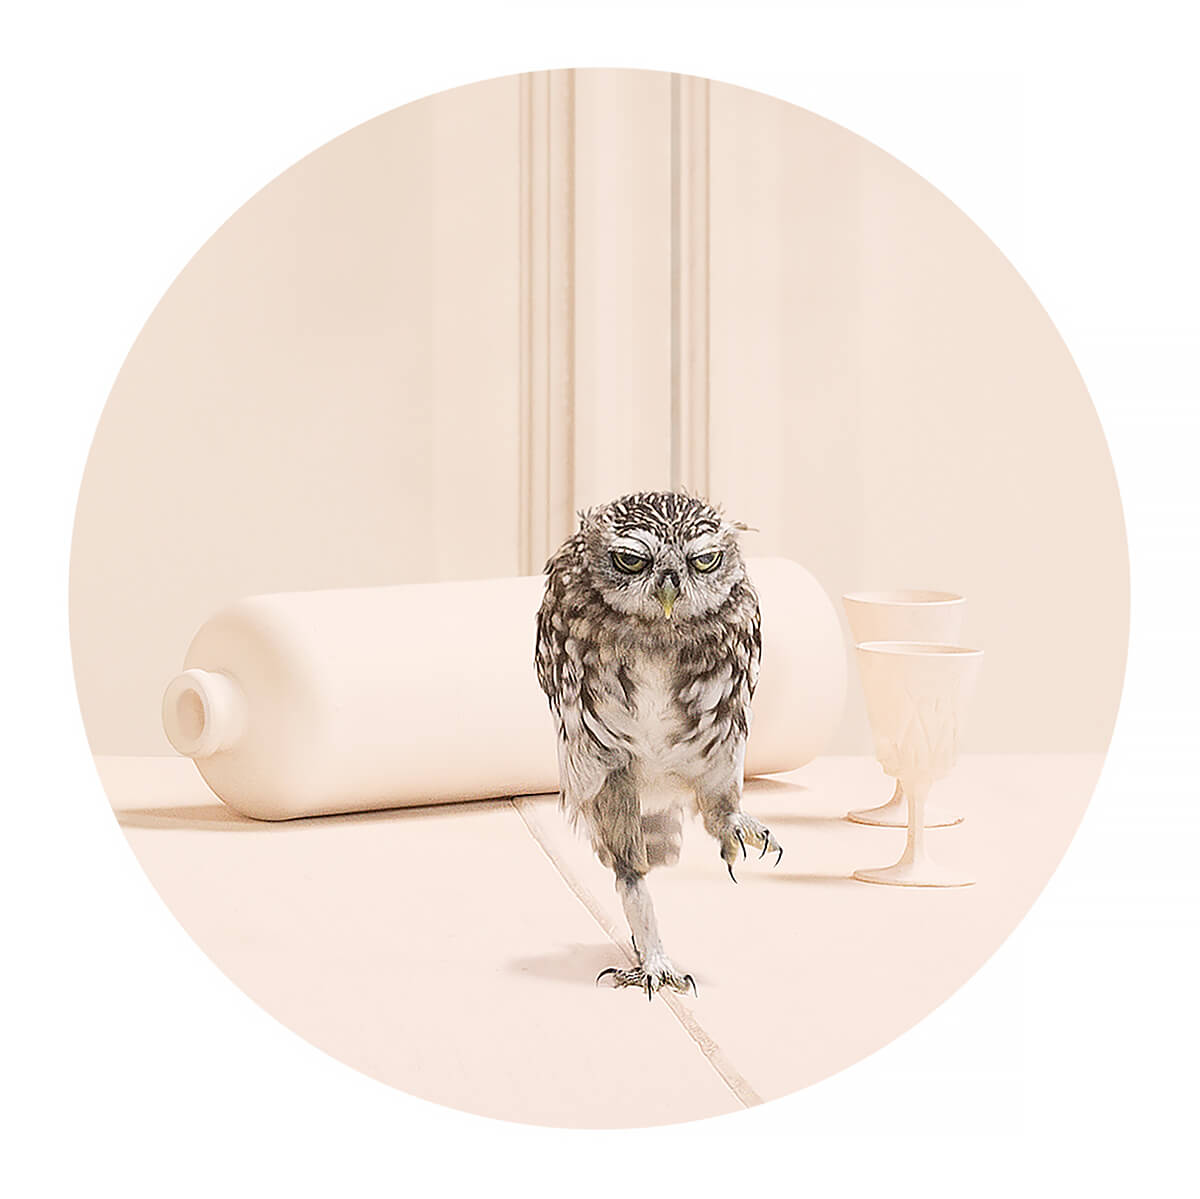 Owl<p>Courtesy Bransch NY & EU / © Frieke Janssens</p>